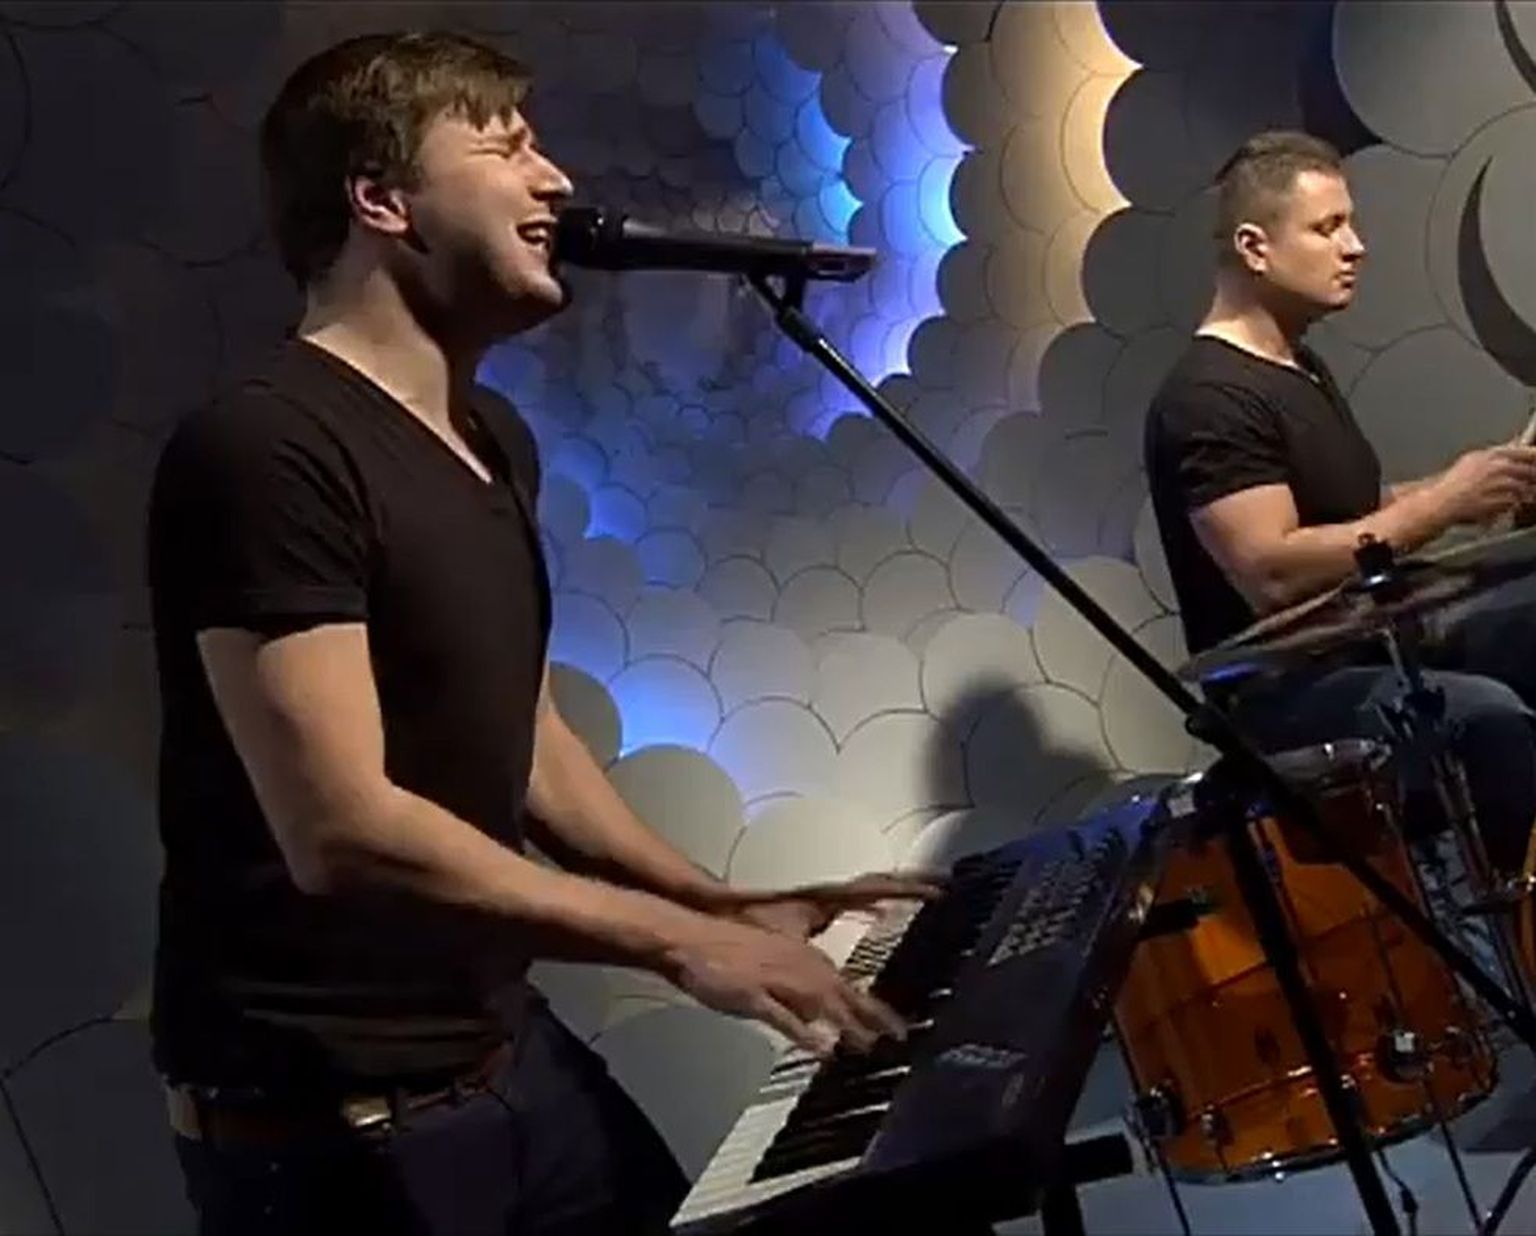 Ansambel Flank esitas Eesti Laul 2013 võistluslugu «Missing light» ETV hommikuprogrammis «Terevisioon».